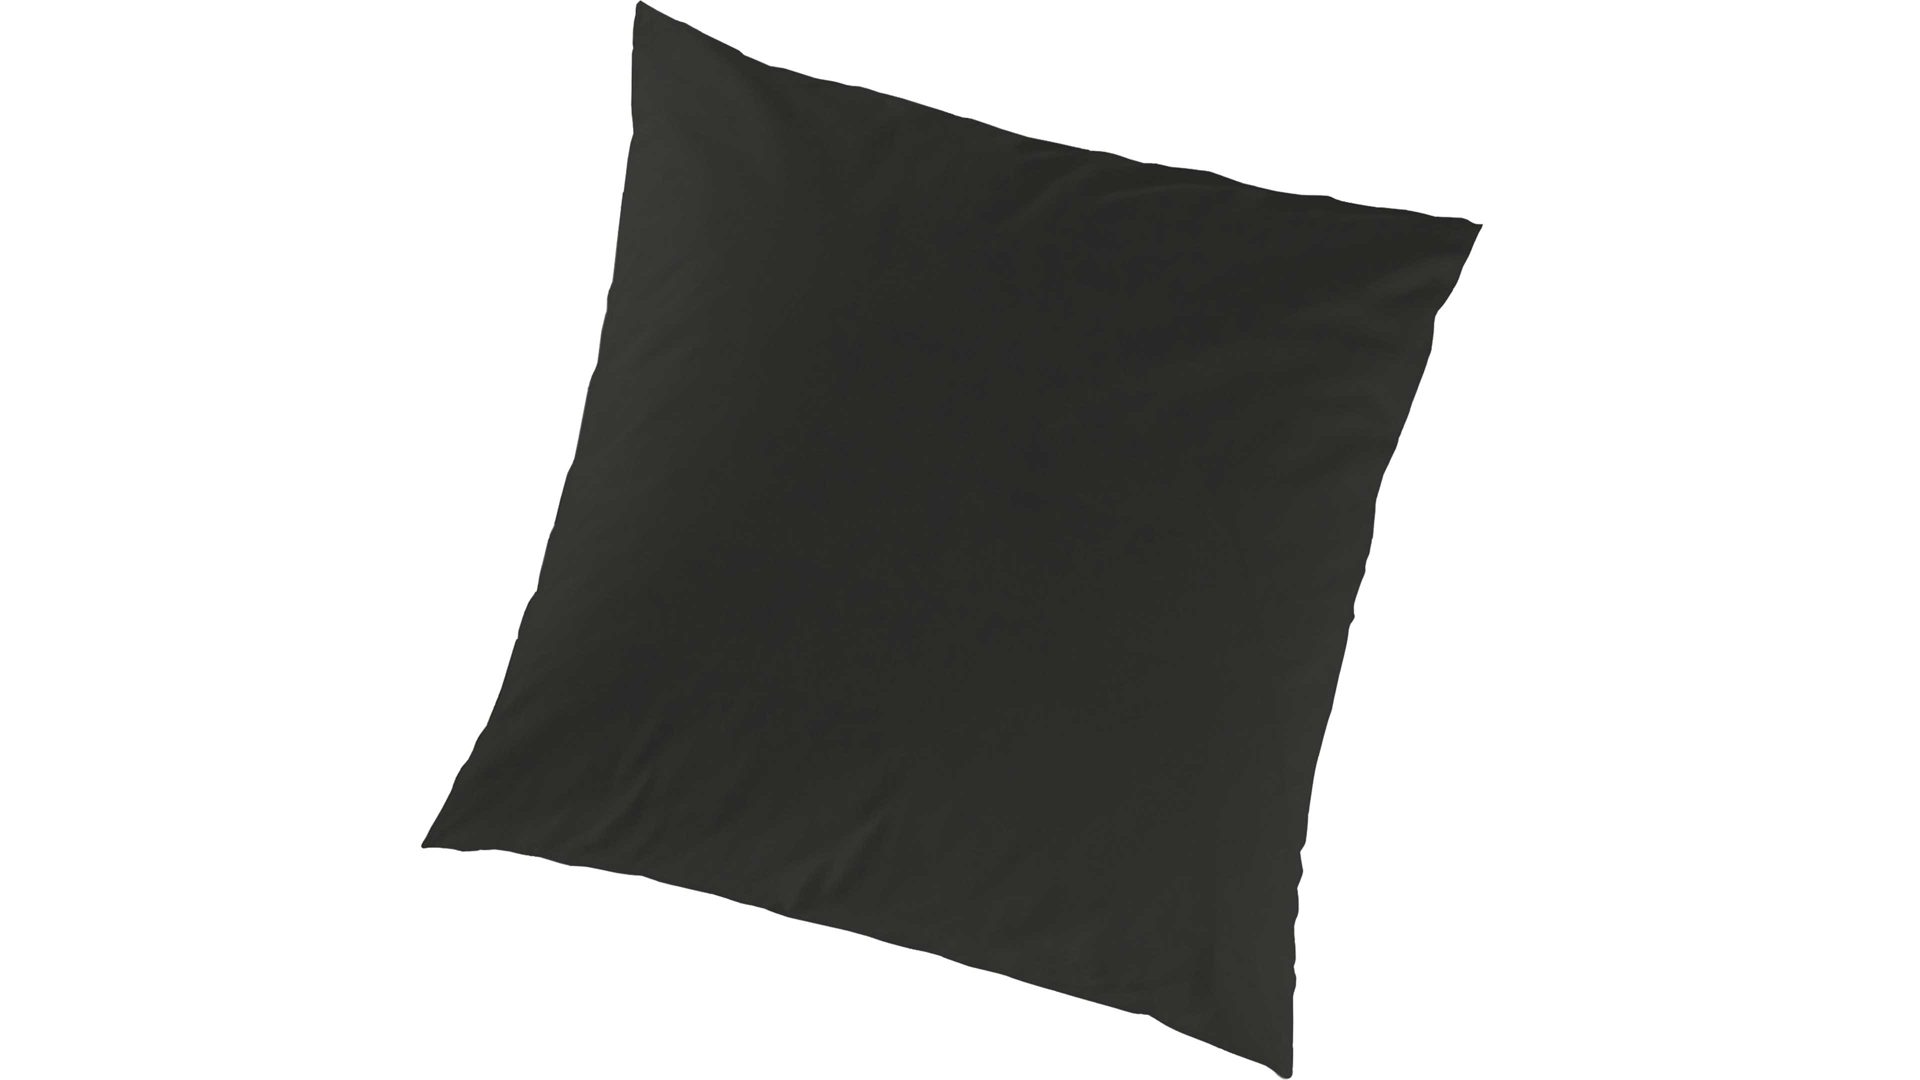 Kissenbezug /-hülle H.g. hahn haustextilien aus Stoff in Schwarz HAHN Luxus-Satin-Kopfkissenbezug Sempre schwarzer Baumwollsatin – ca. 80 x 80 cm